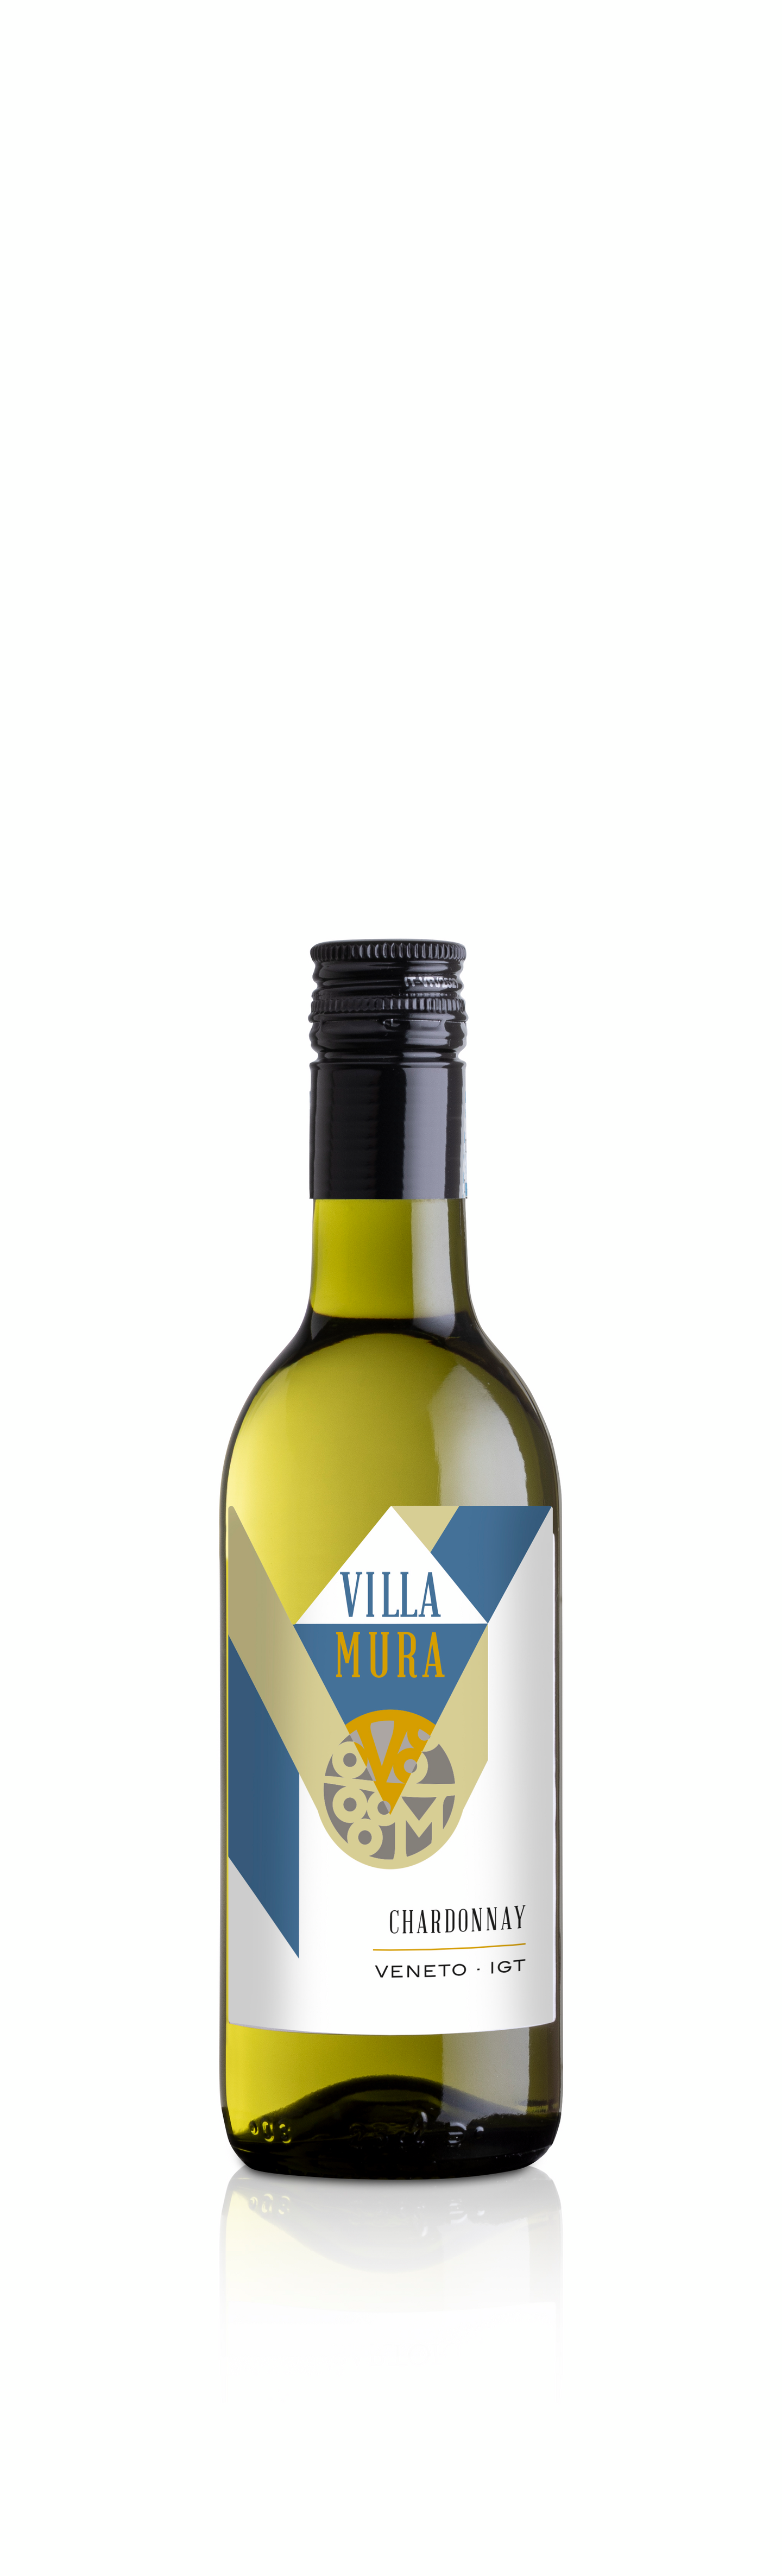 Sartori Chardonnay Villa Mura 25cl 12% v